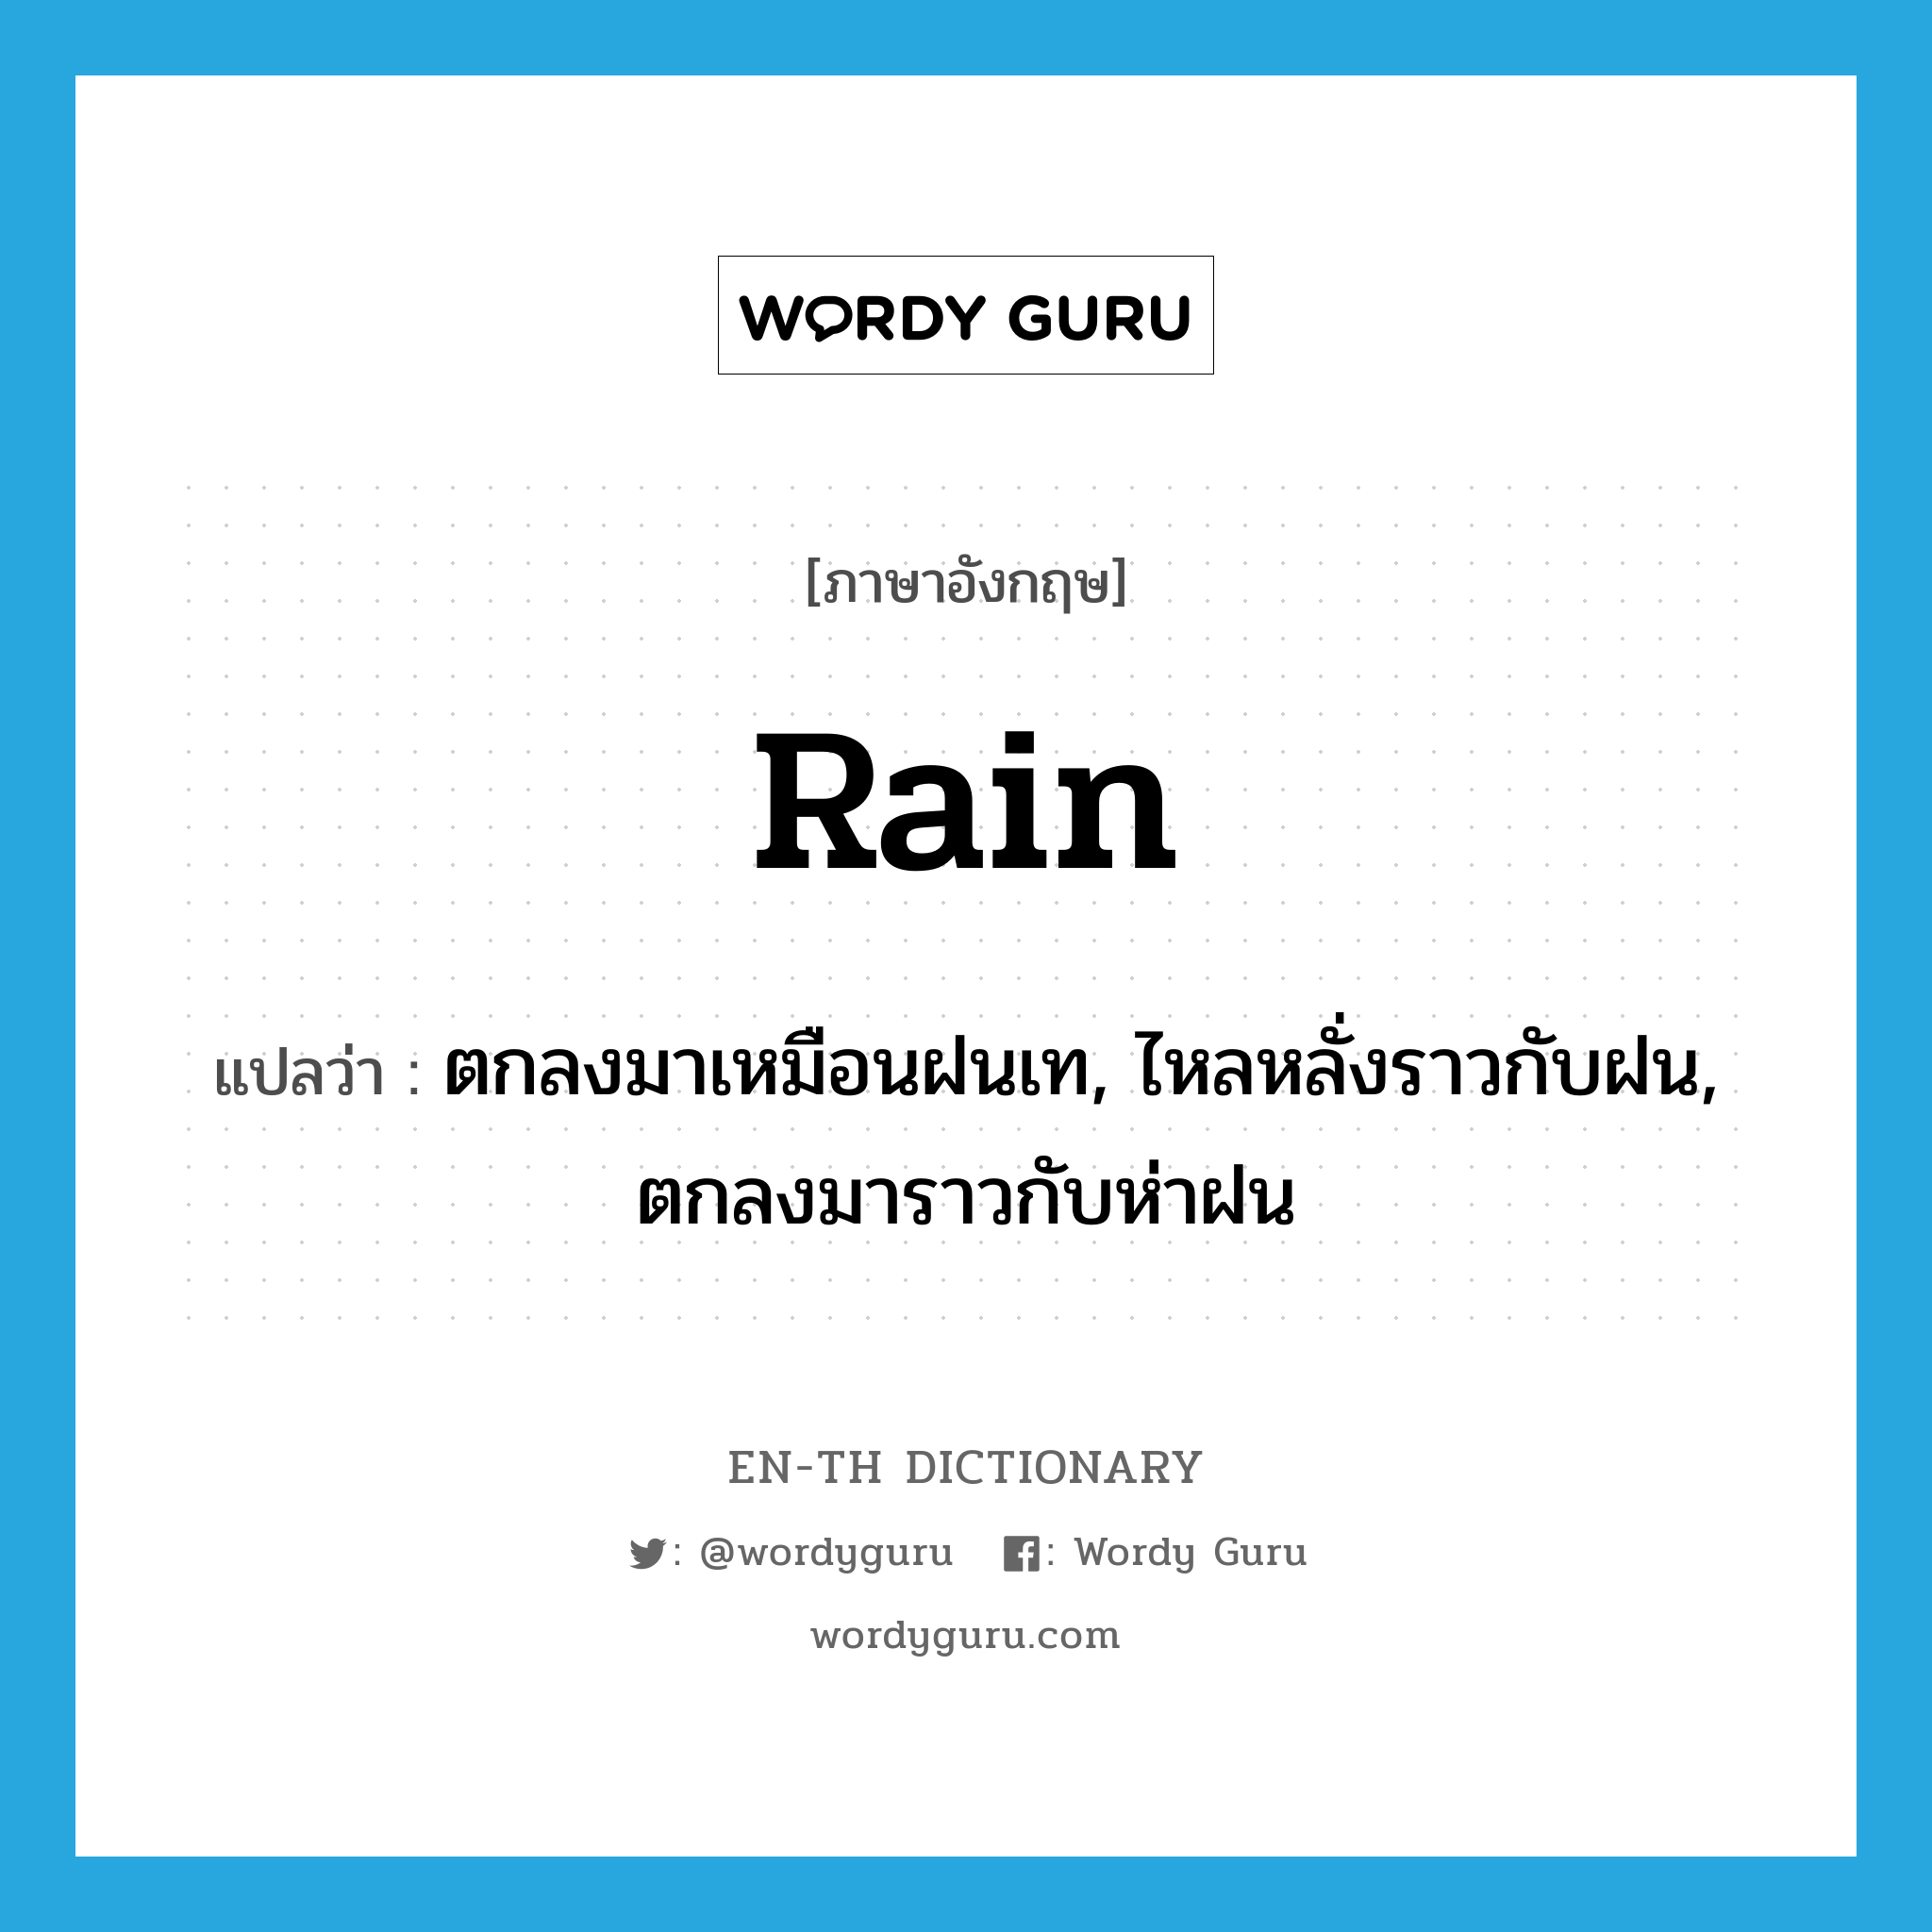 ตกลงมาเหมือนฝนเท, ไหลหลั่งราวกับฝน, ตกลงมาราวกับห่าฝน ภาษาอังกฤษ?, คำศัพท์ภาษาอังกฤษ ตกลงมาเหมือนฝนเท, ไหลหลั่งราวกับฝน, ตกลงมาราวกับห่าฝน แปลว่า rain ประเภท VI หมวด VI